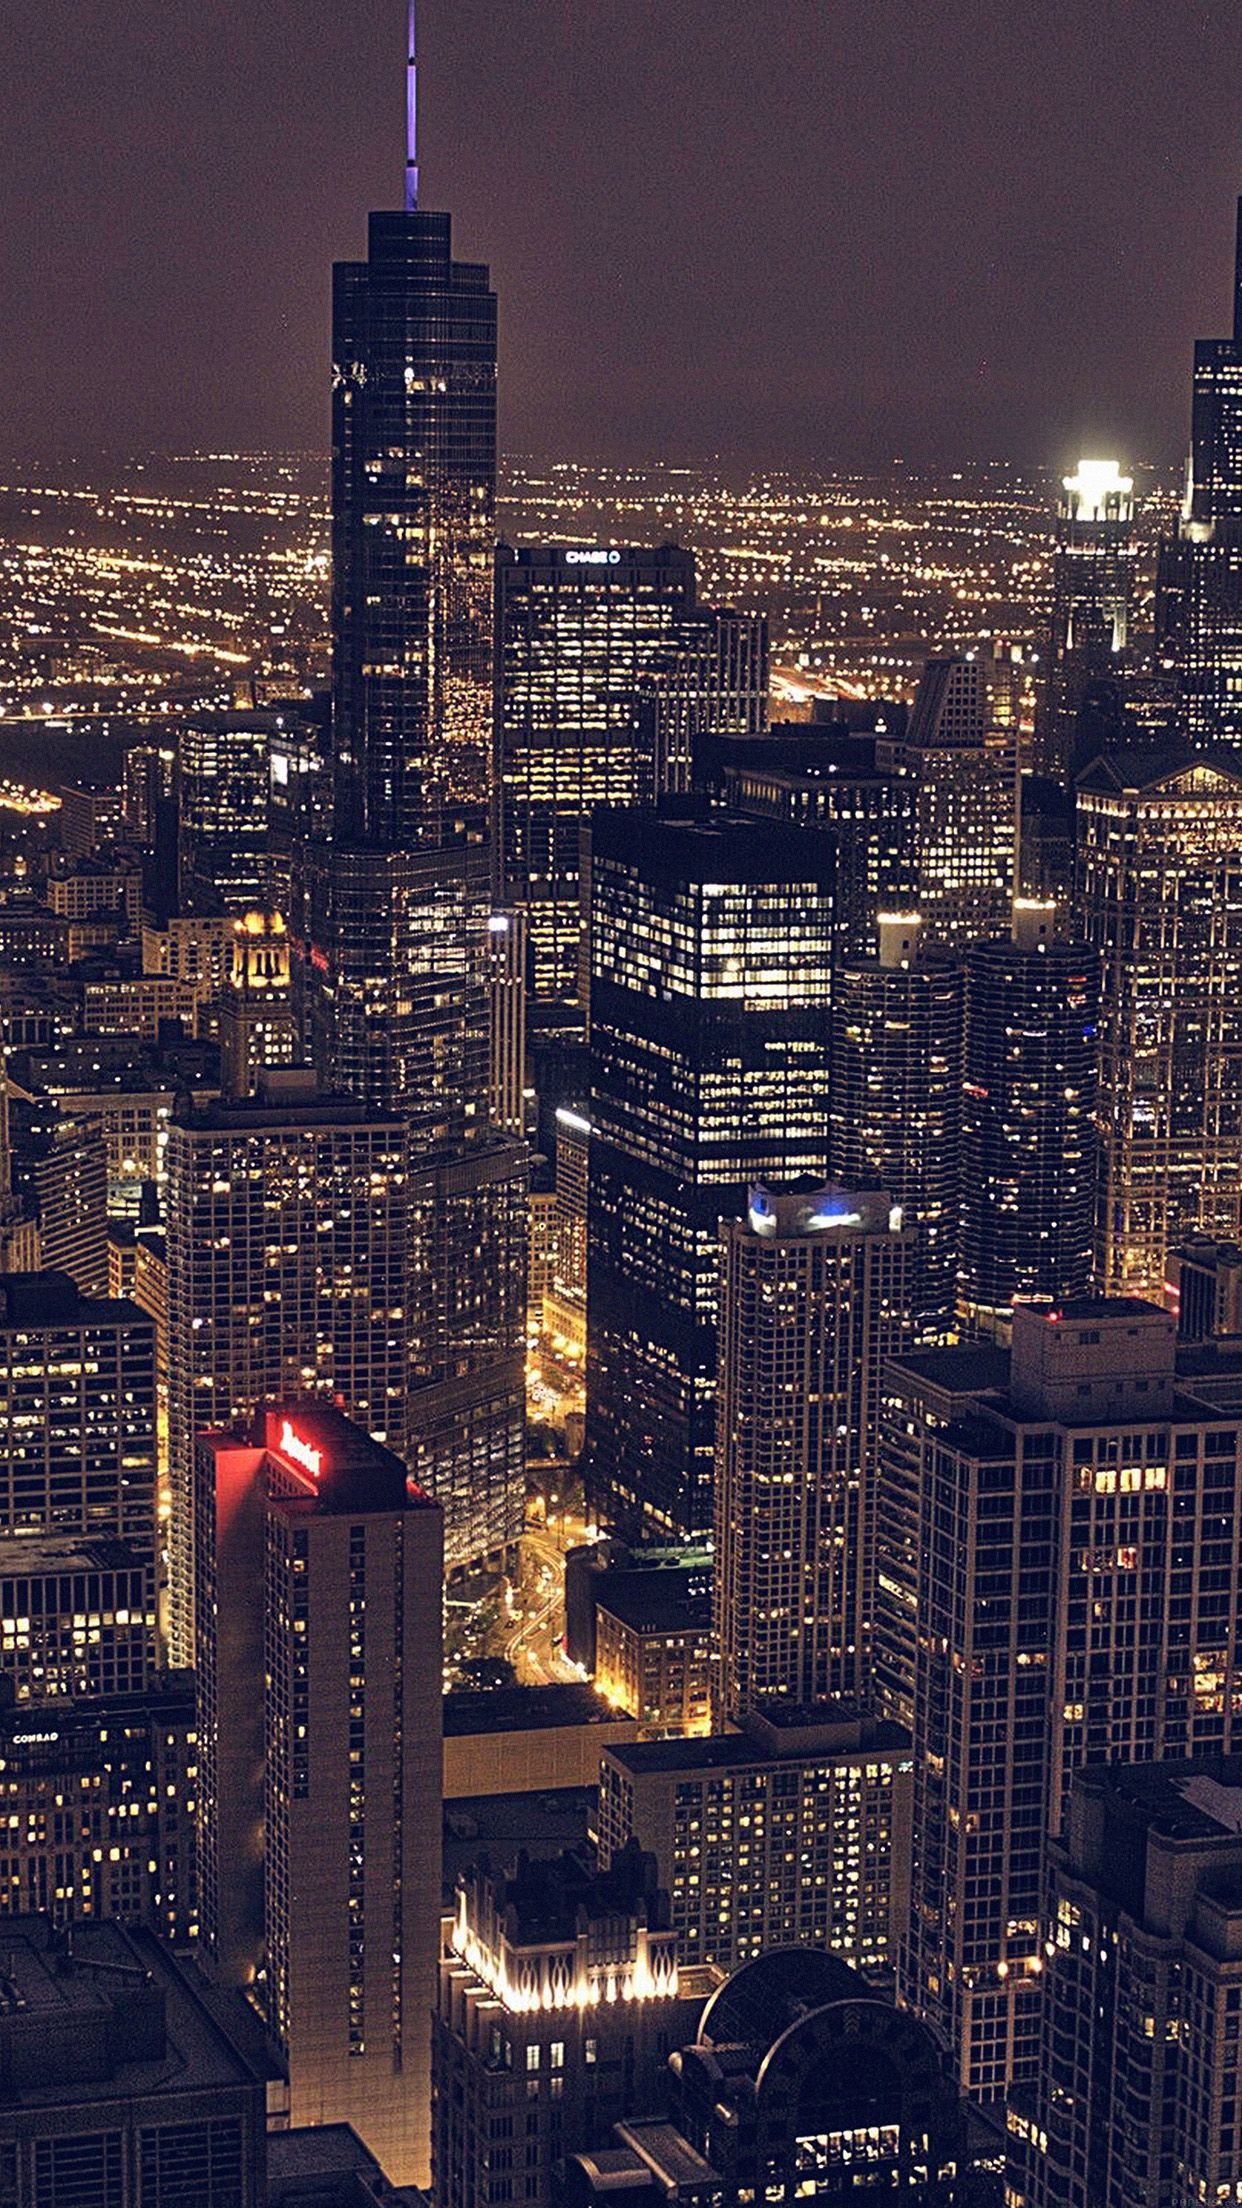 Chicago City Aertial View Night iPhone 6 Plus HD Wallpaper. Fotografia de cidades, Fotografia de paisagem, Fotografia da cidade